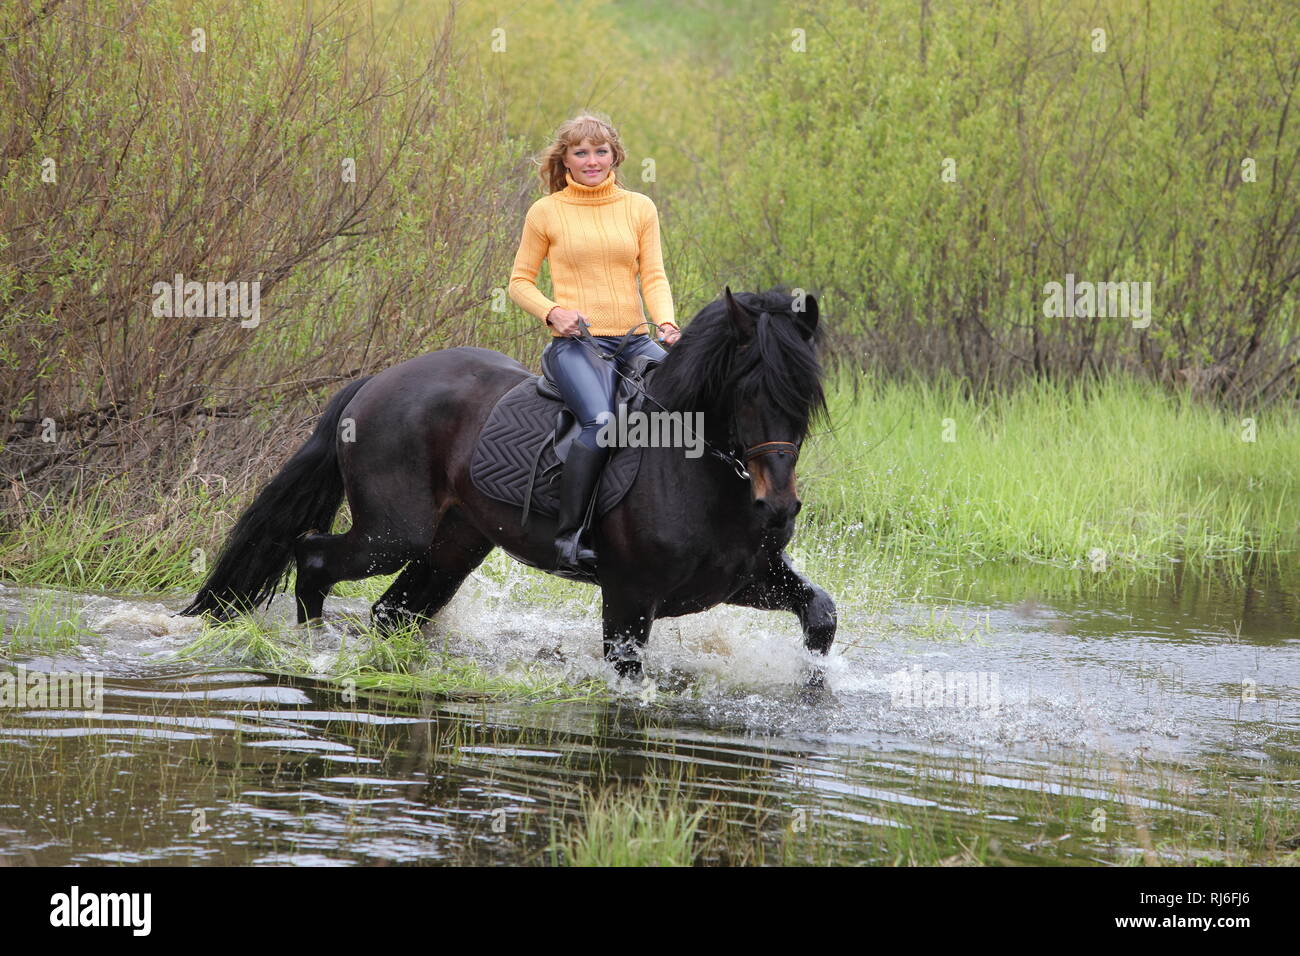 Les jeunes grâce à son cheval équitation cowgirl river Banque D'Images